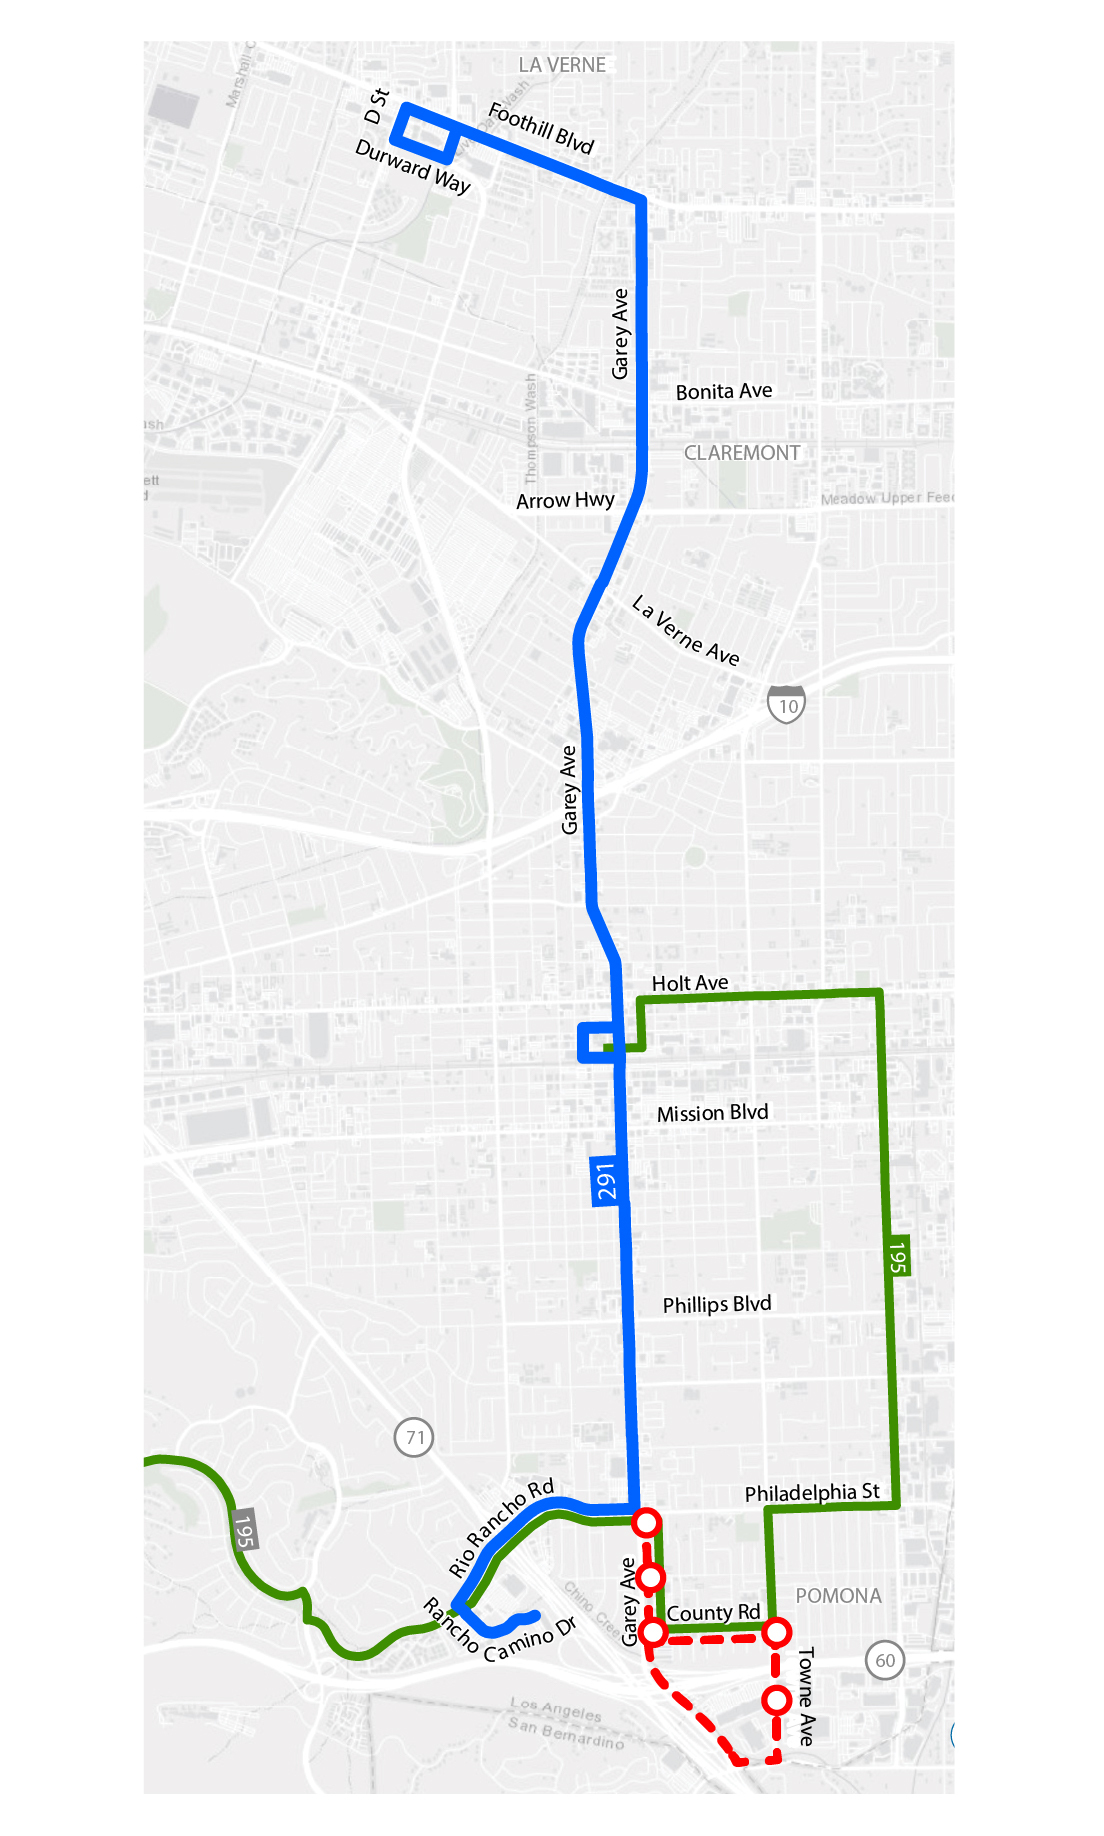 Đầu phía nam sẽ phục vụ Rancho Camino Dr thay vì County Rd và Towne Ave. Tuyến 195 vẫn sẽ phục vụ Garey Ave và County Rd.